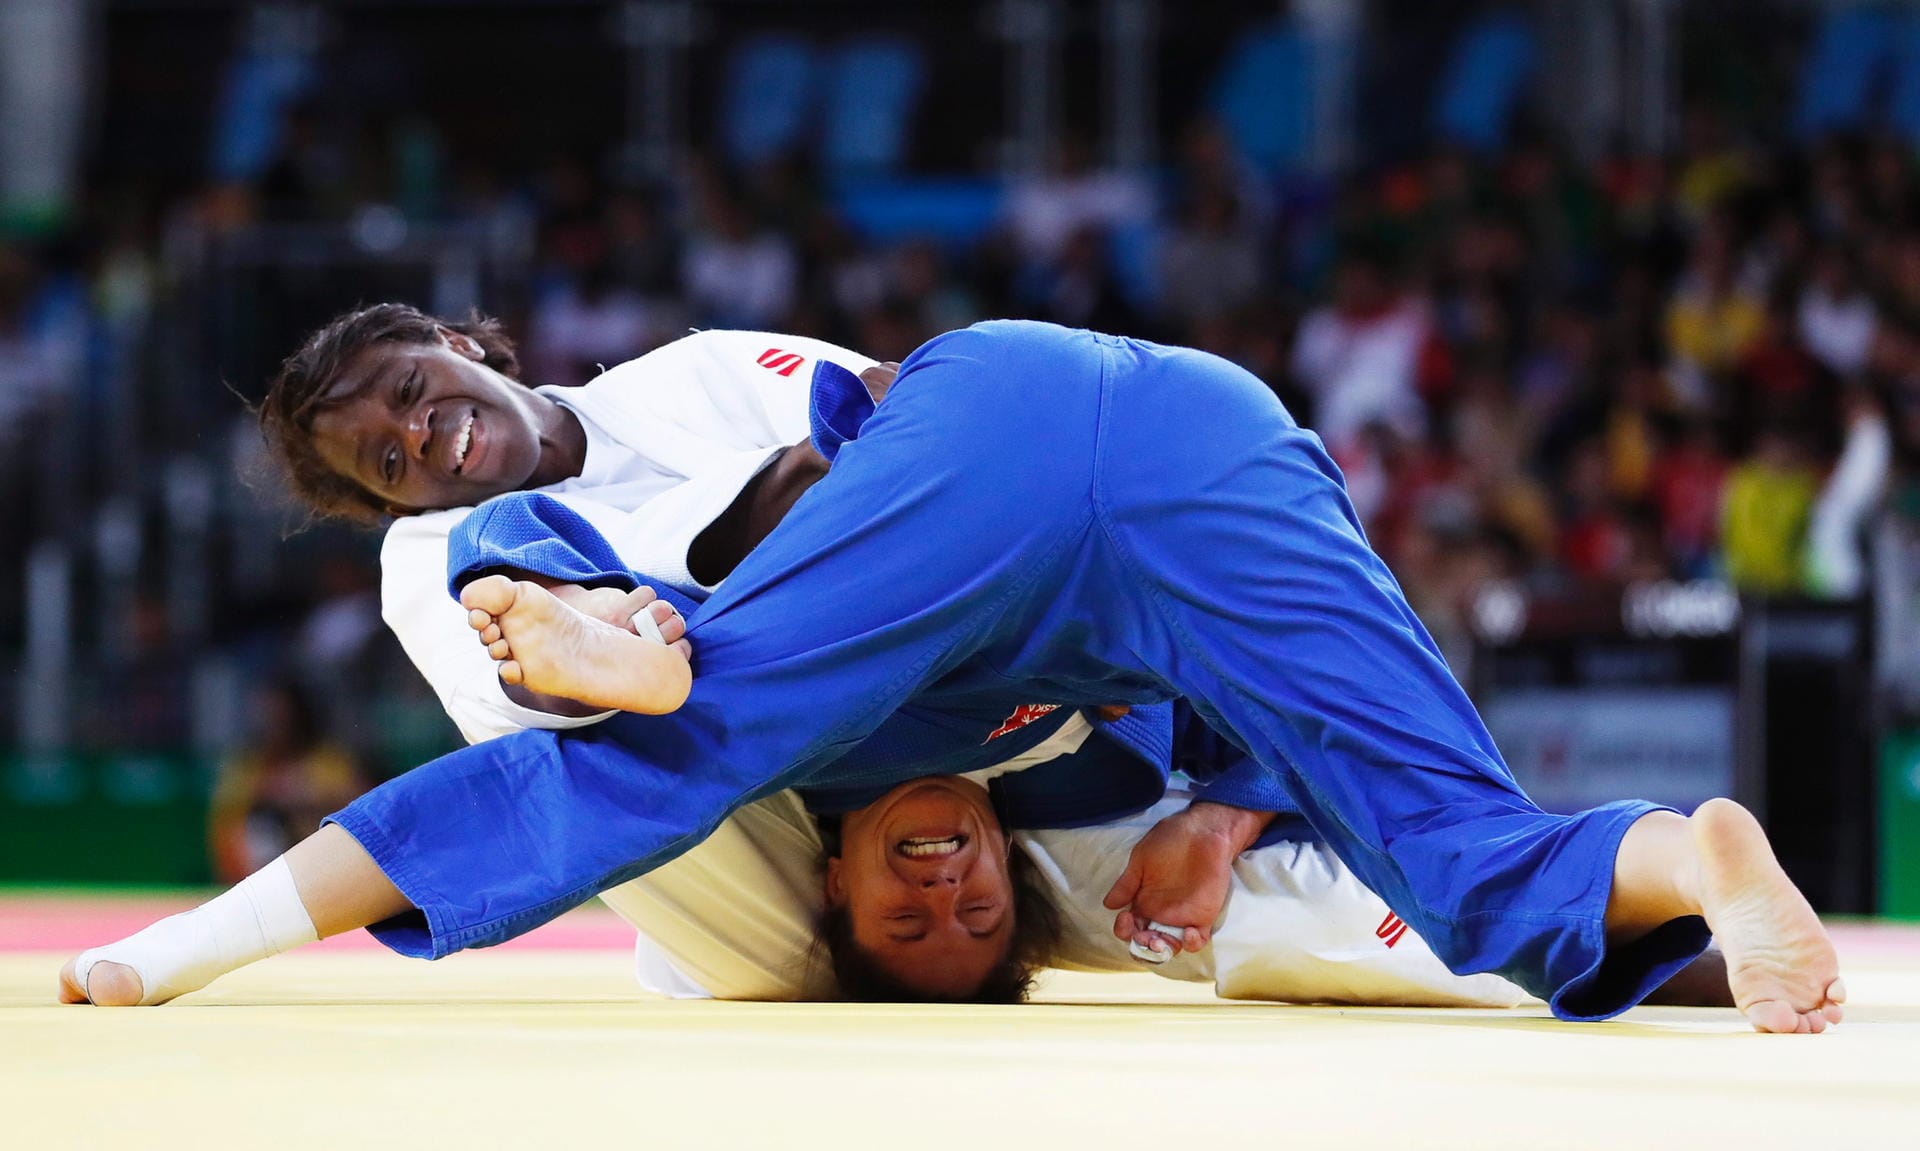 Kopfstand in der Not: Die spanische Judoka Maria Bernabeu brachte die Polin Katarzyna Klys durch einen festen Griff in Schwierigkeiten.